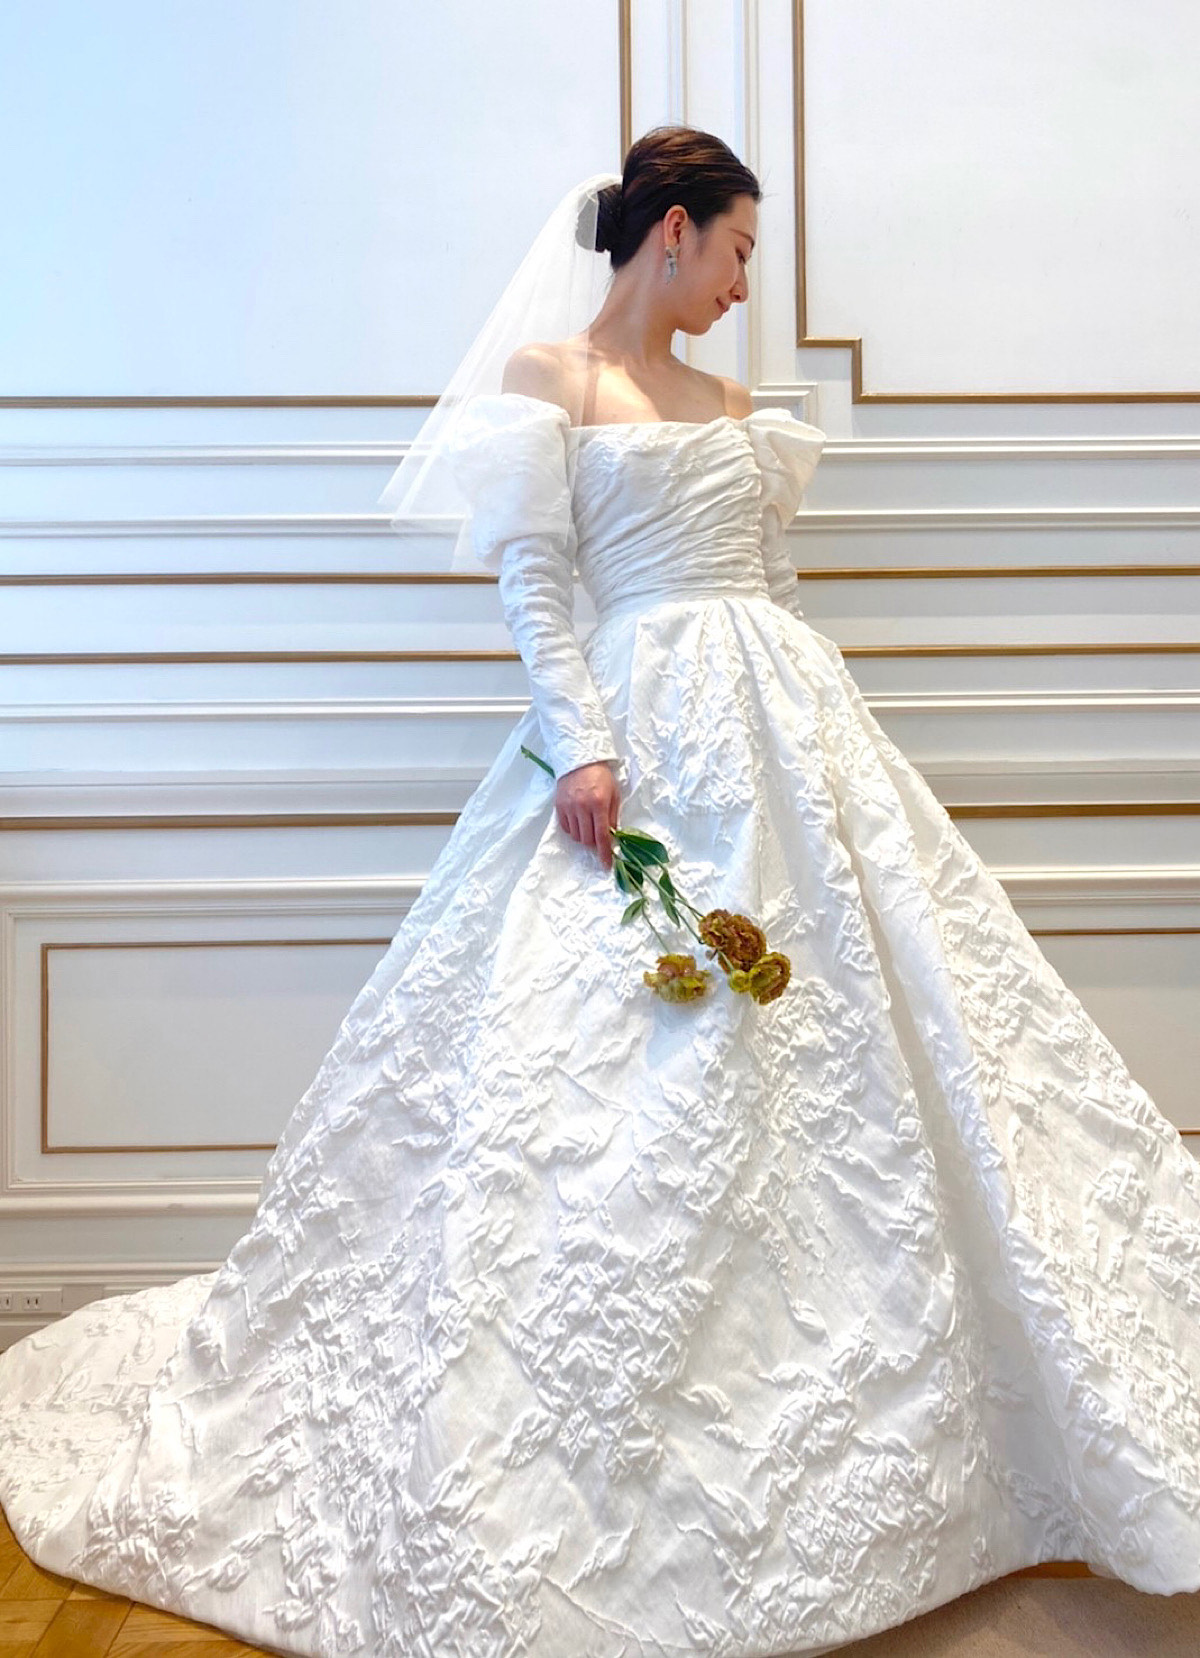 ザトリートドレッシング名古屋店がおすすめするクラシカルウェディングを叶えたい花嫁にぴったりのリーム アクラのウェディングドレス